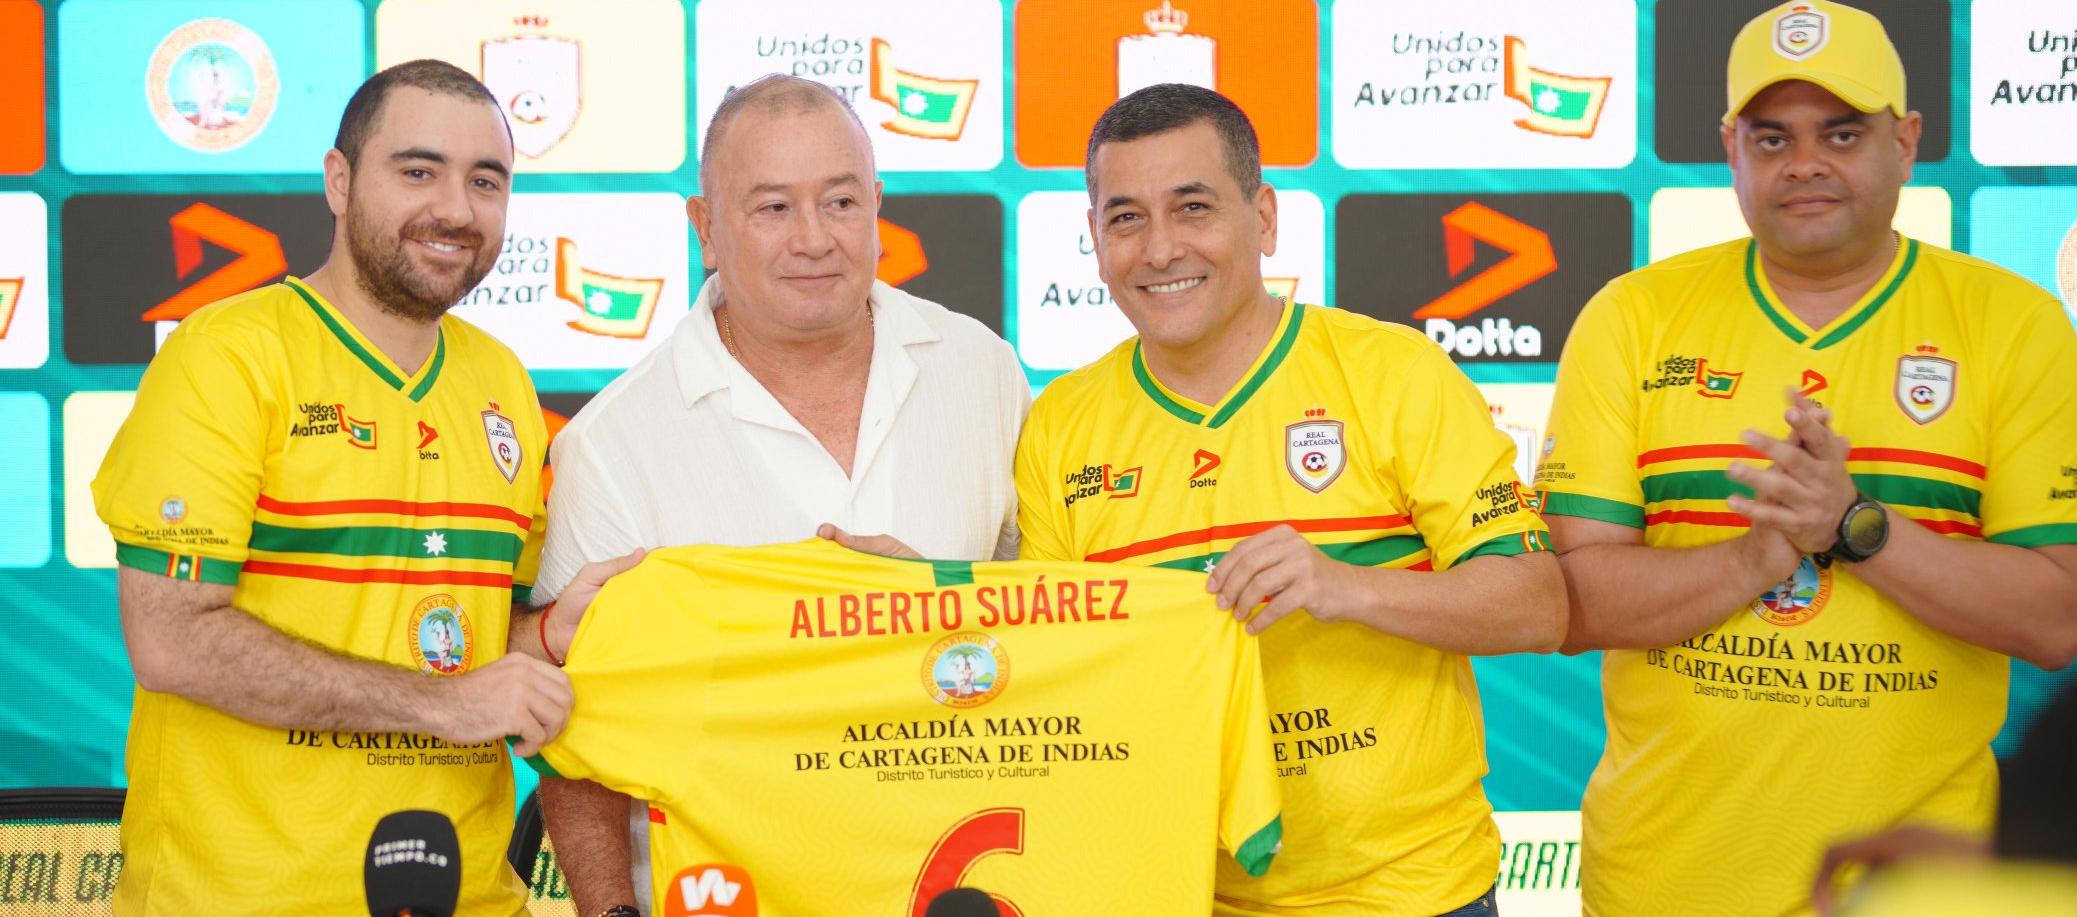 Alberto Suárez en compañía del alcalde electo de Cartagna, Dumek Turbay, y el director del Ider, Campo Elías Terán Jr.